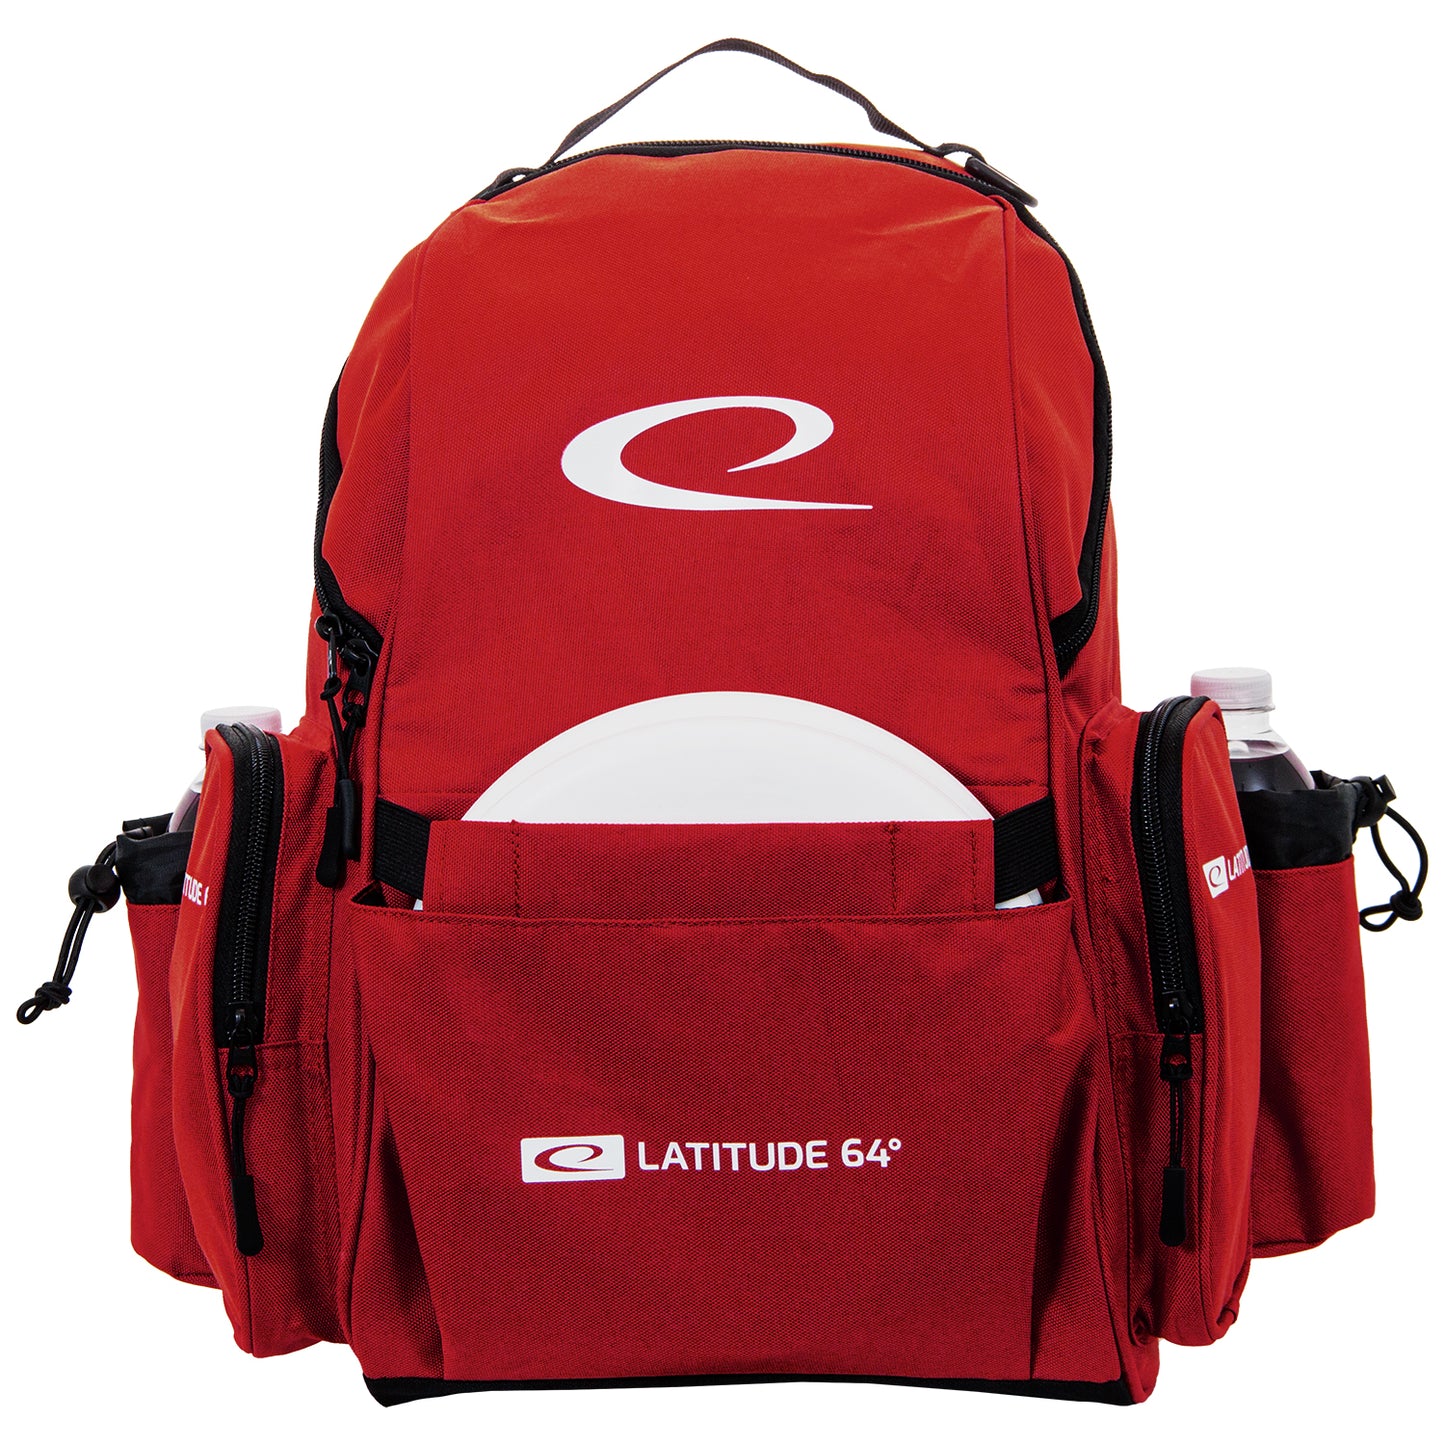 Latitude 64 Swift Backpack